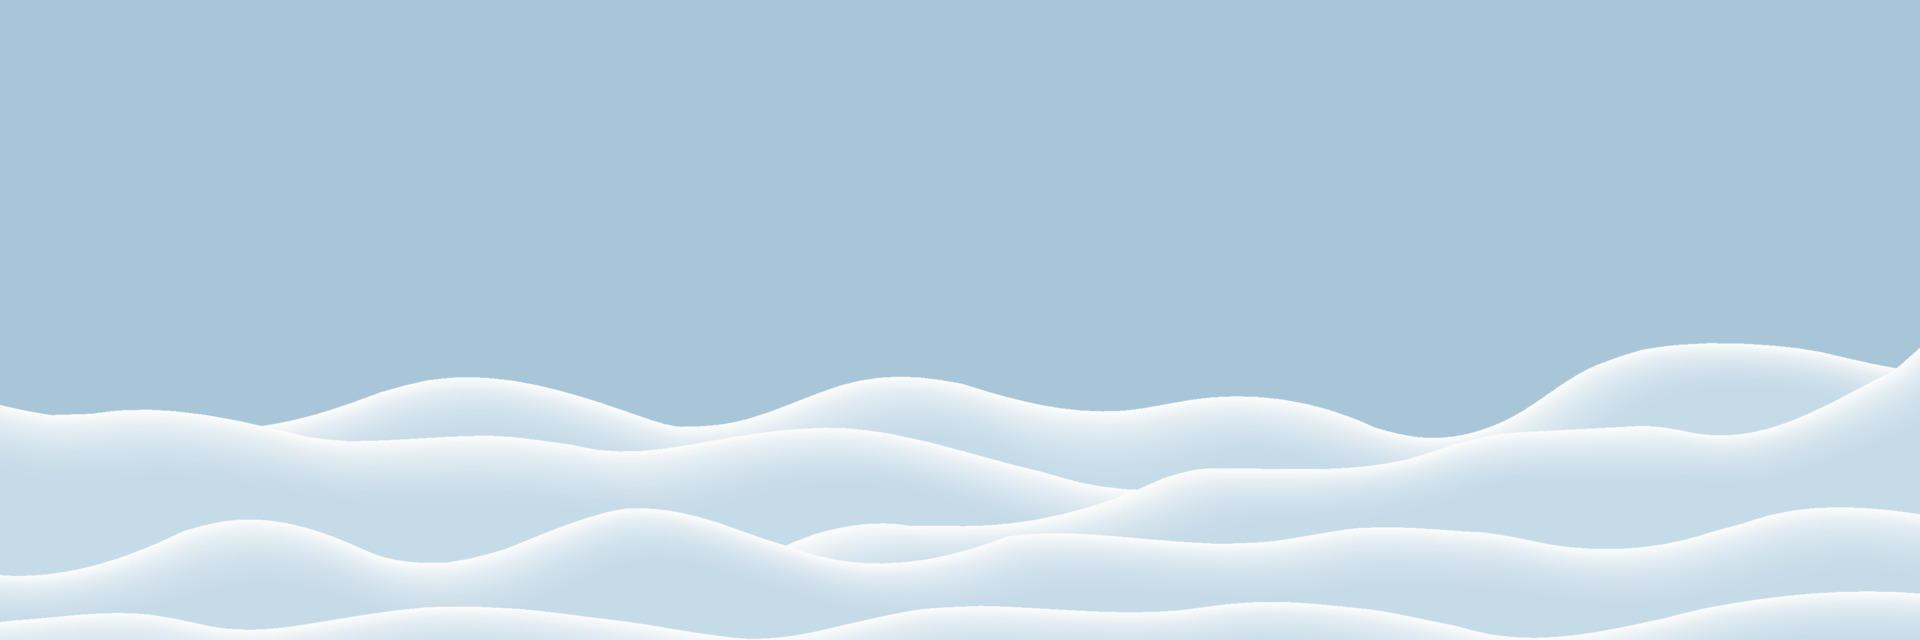 fundo natural do inverno. decoração de paisagem de neve. campo de bancos de neve vazio. colinas congeladas. montes de neve. ilustração vetorial vetor